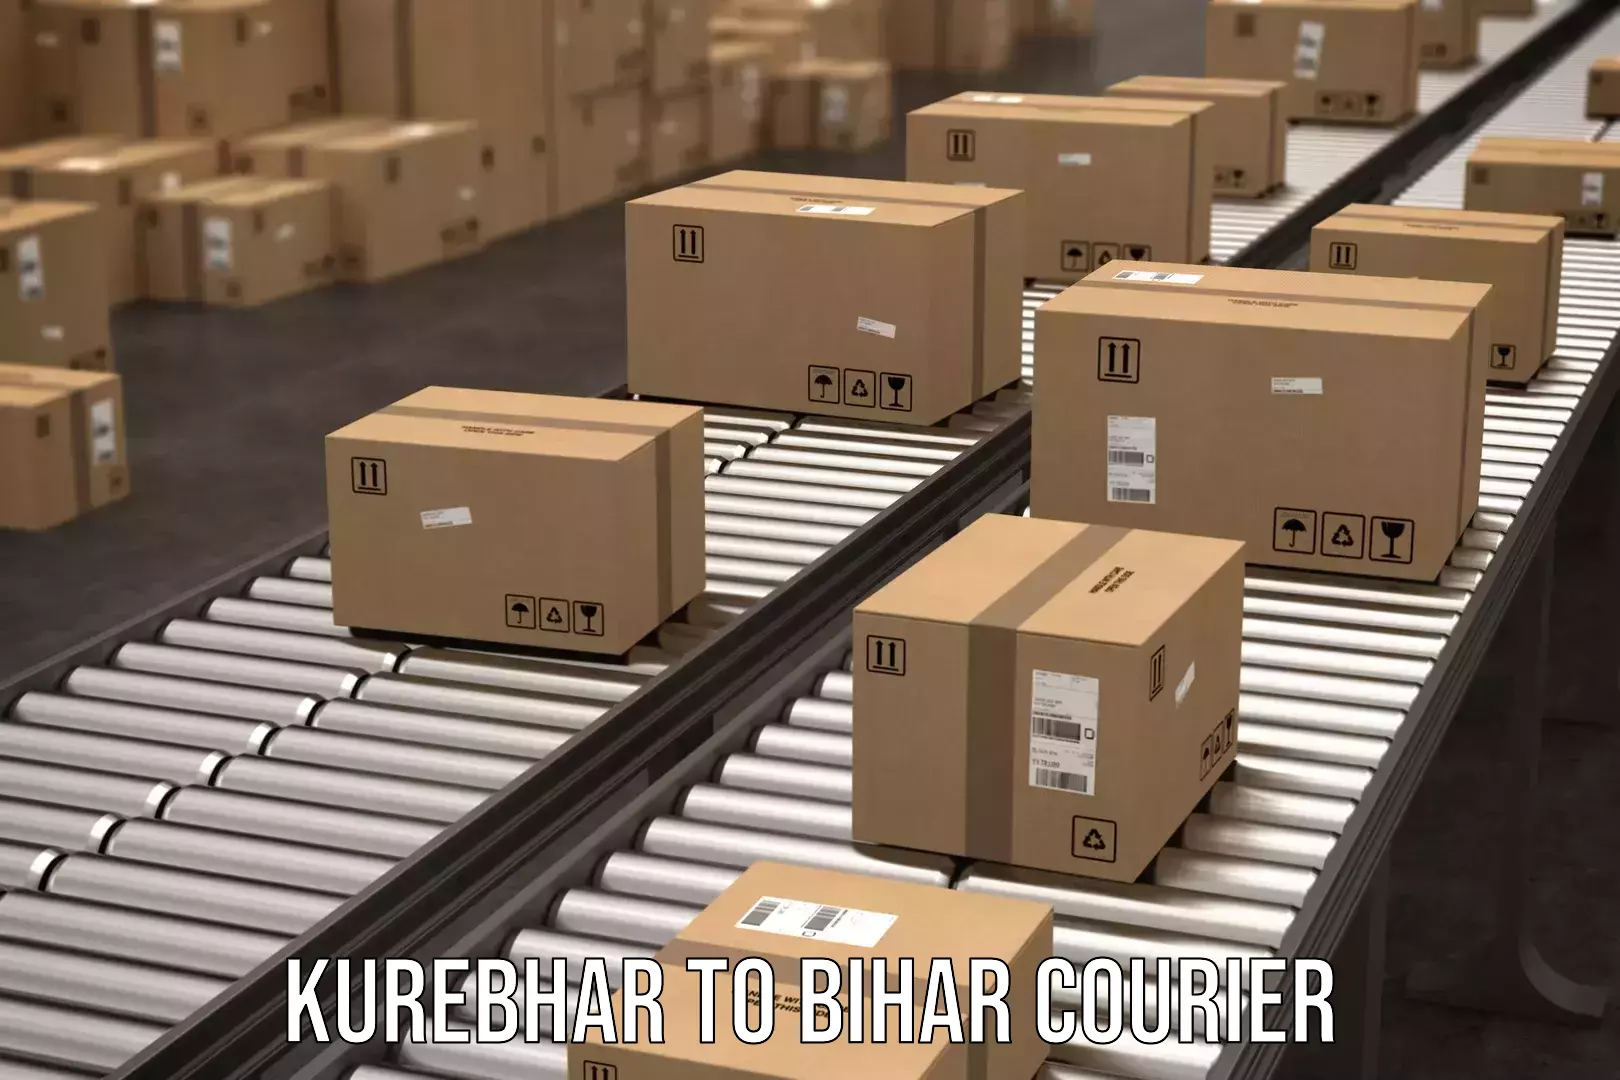 Cost-effective courier options Kurebhar to Bihar